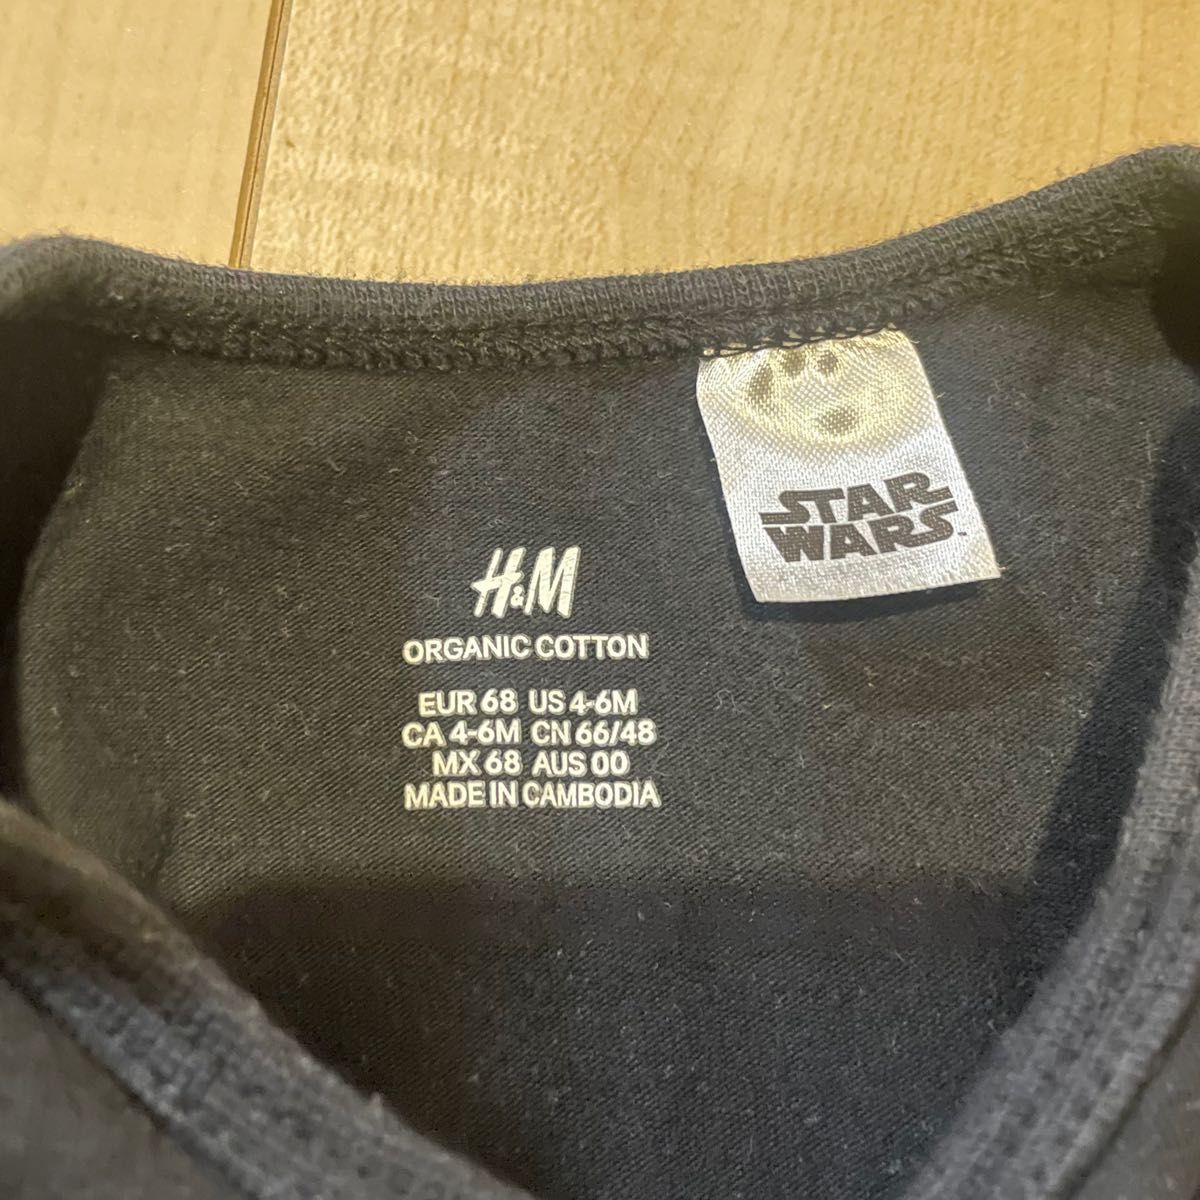 H&M スターウォーズ ロンパース パンツ セットアップ ダースベイダー ベビー ボディスーツ ズボン 4-6M 70cm 